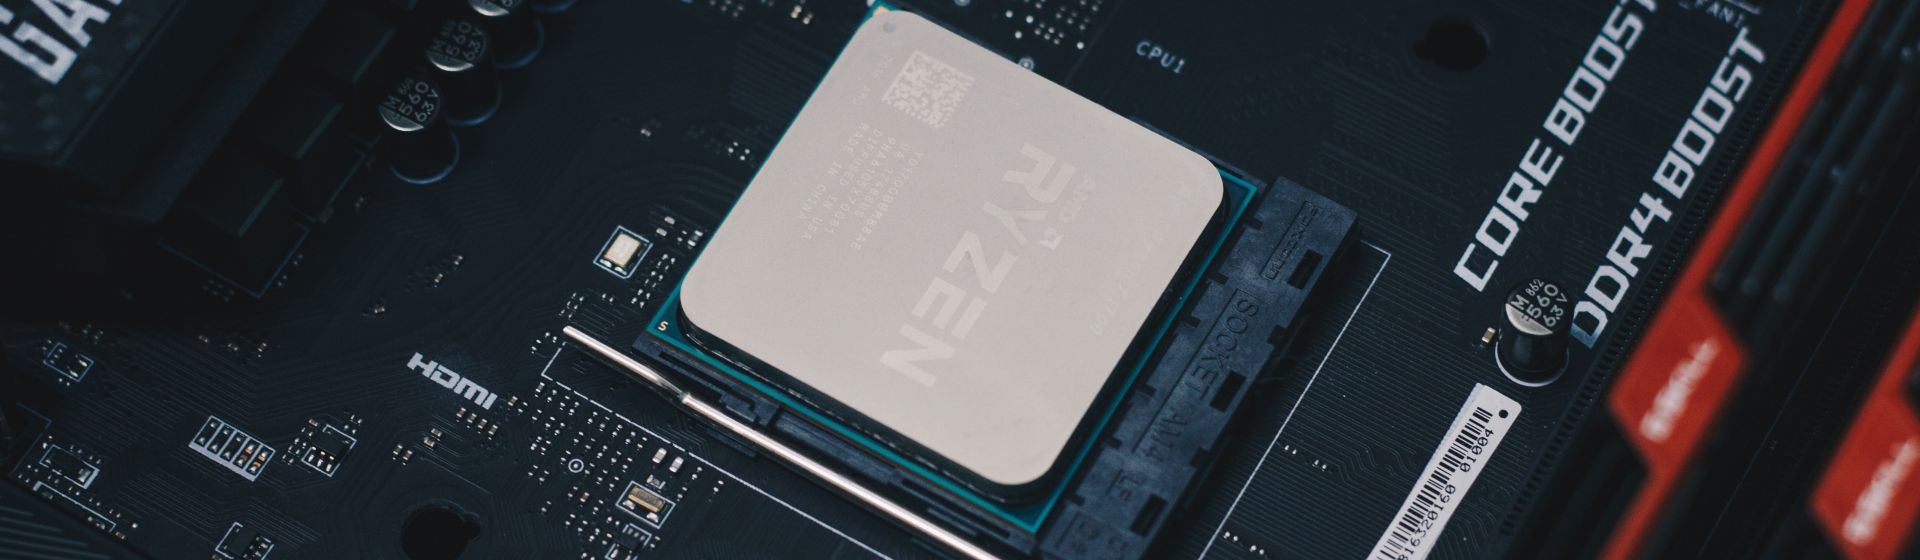 AMD có thể tiết lộ cấu trúc Zen 3 tại CES 2020 cùng với công nghệ mới